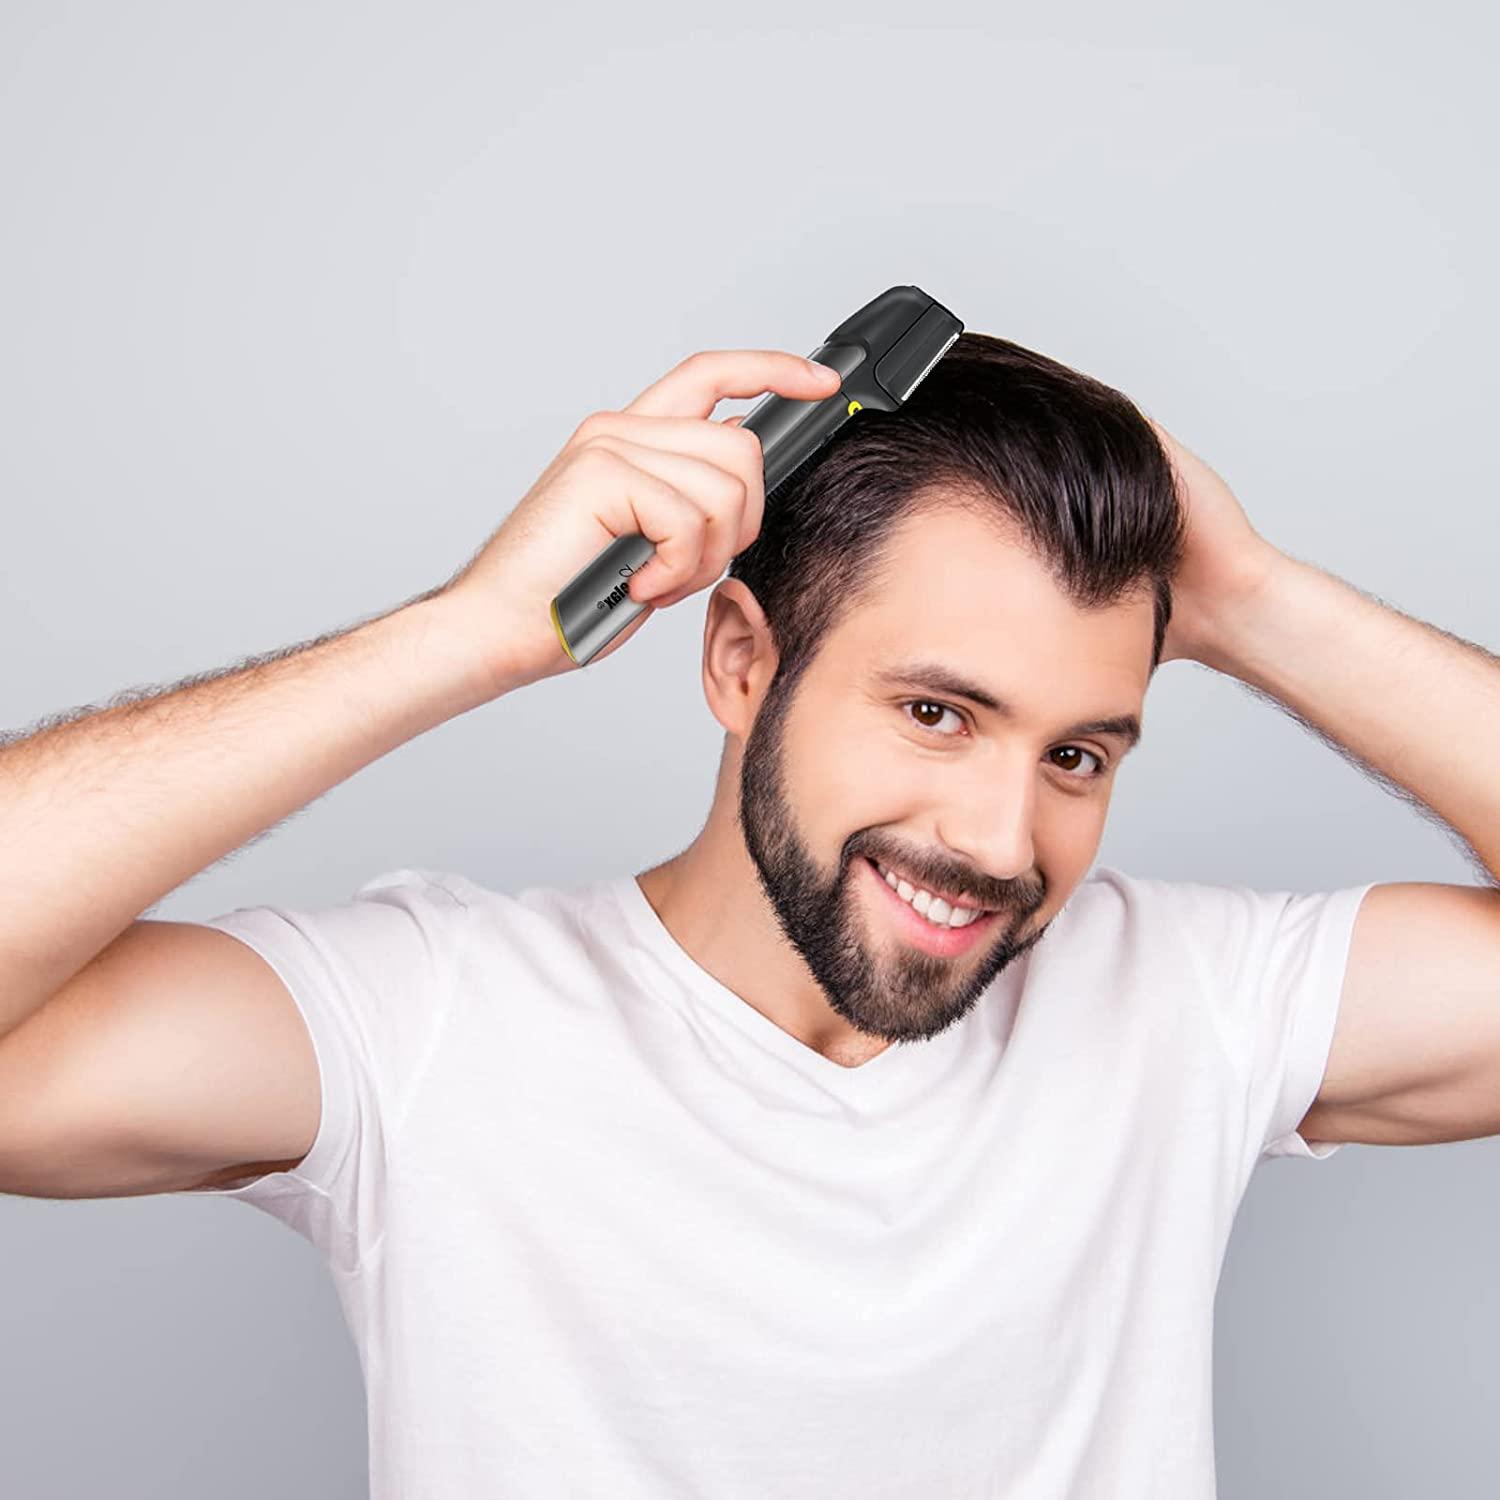 Gurelax Titanium Trim Hair Trimmer for Men, Trim Hair Cutting Tool as seen  on TV, Men's Body Hair Trimmer & Hair Clipper for Head Hair/ Beard/ Back/  Groin/ Pubic/ Bikini Hair Trimmer